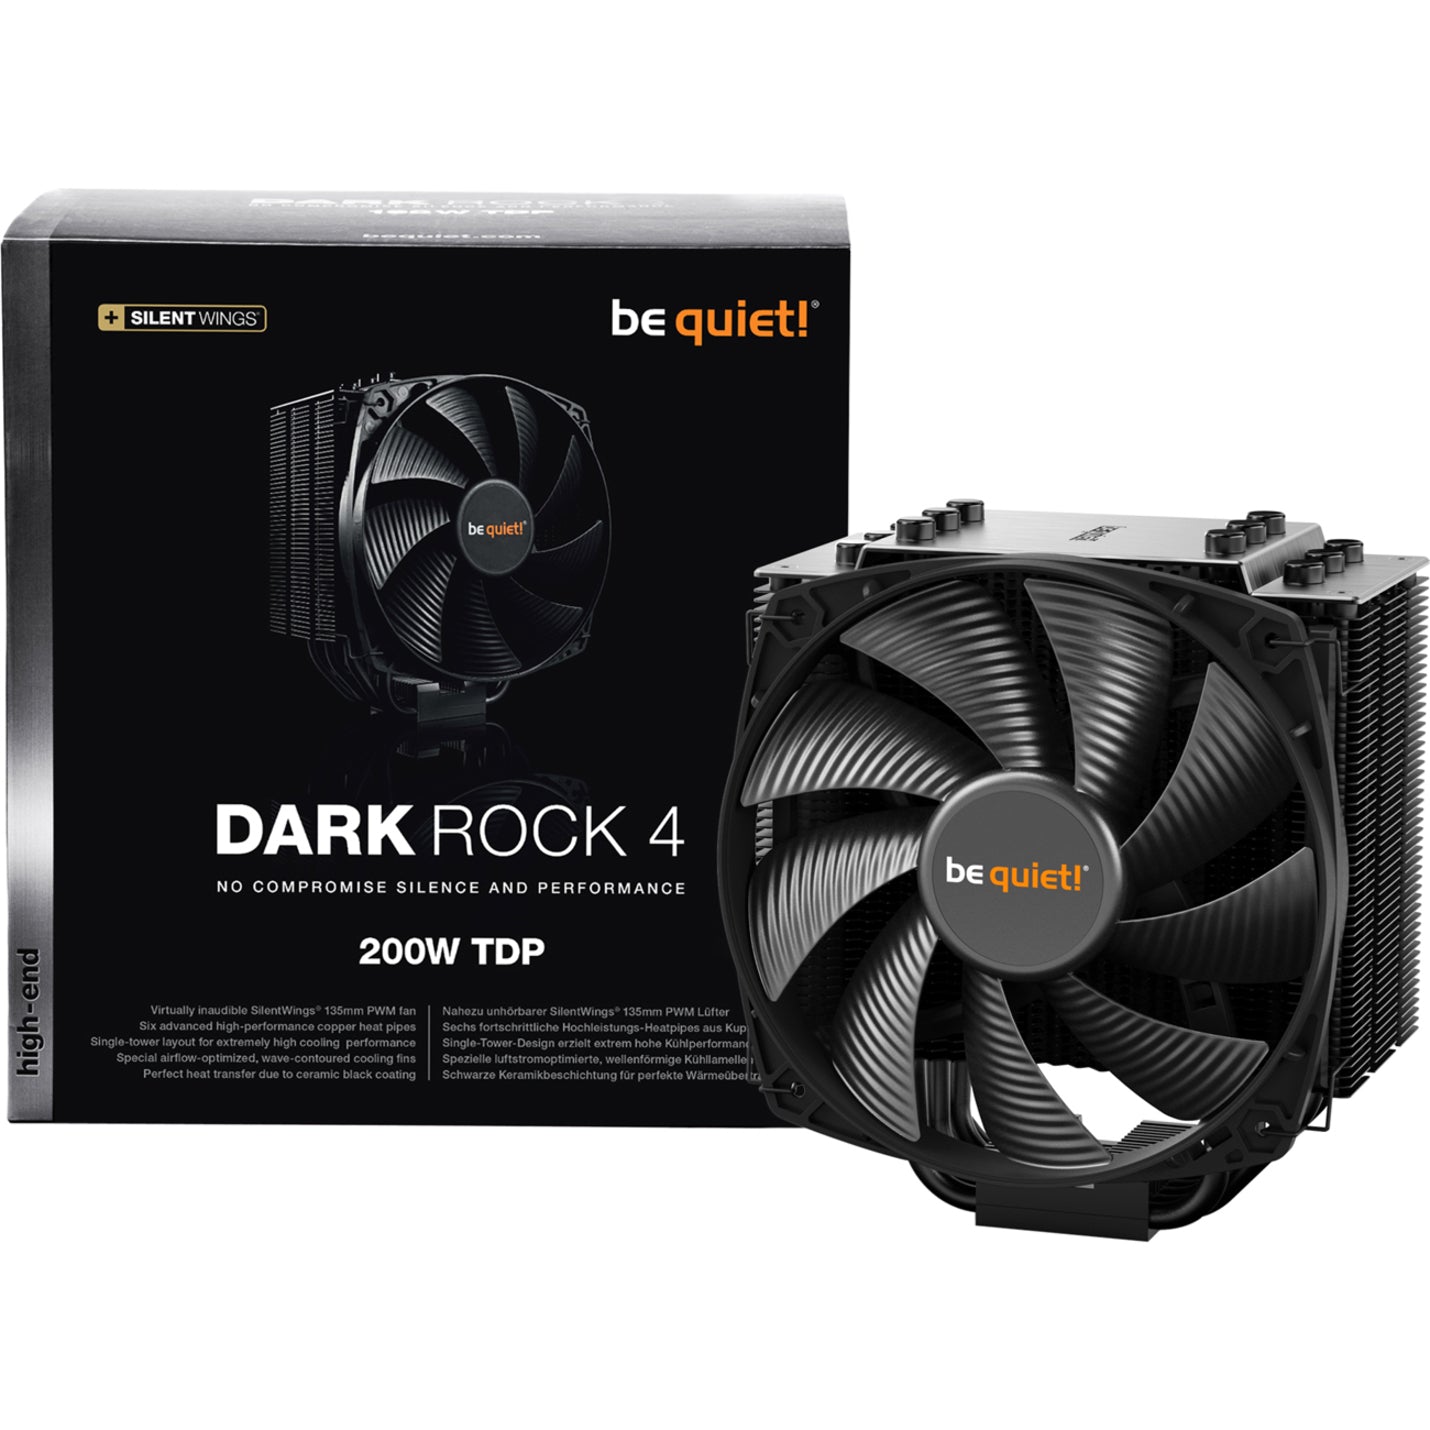 Be quiet! Dark Rock 4 CPU Cooler